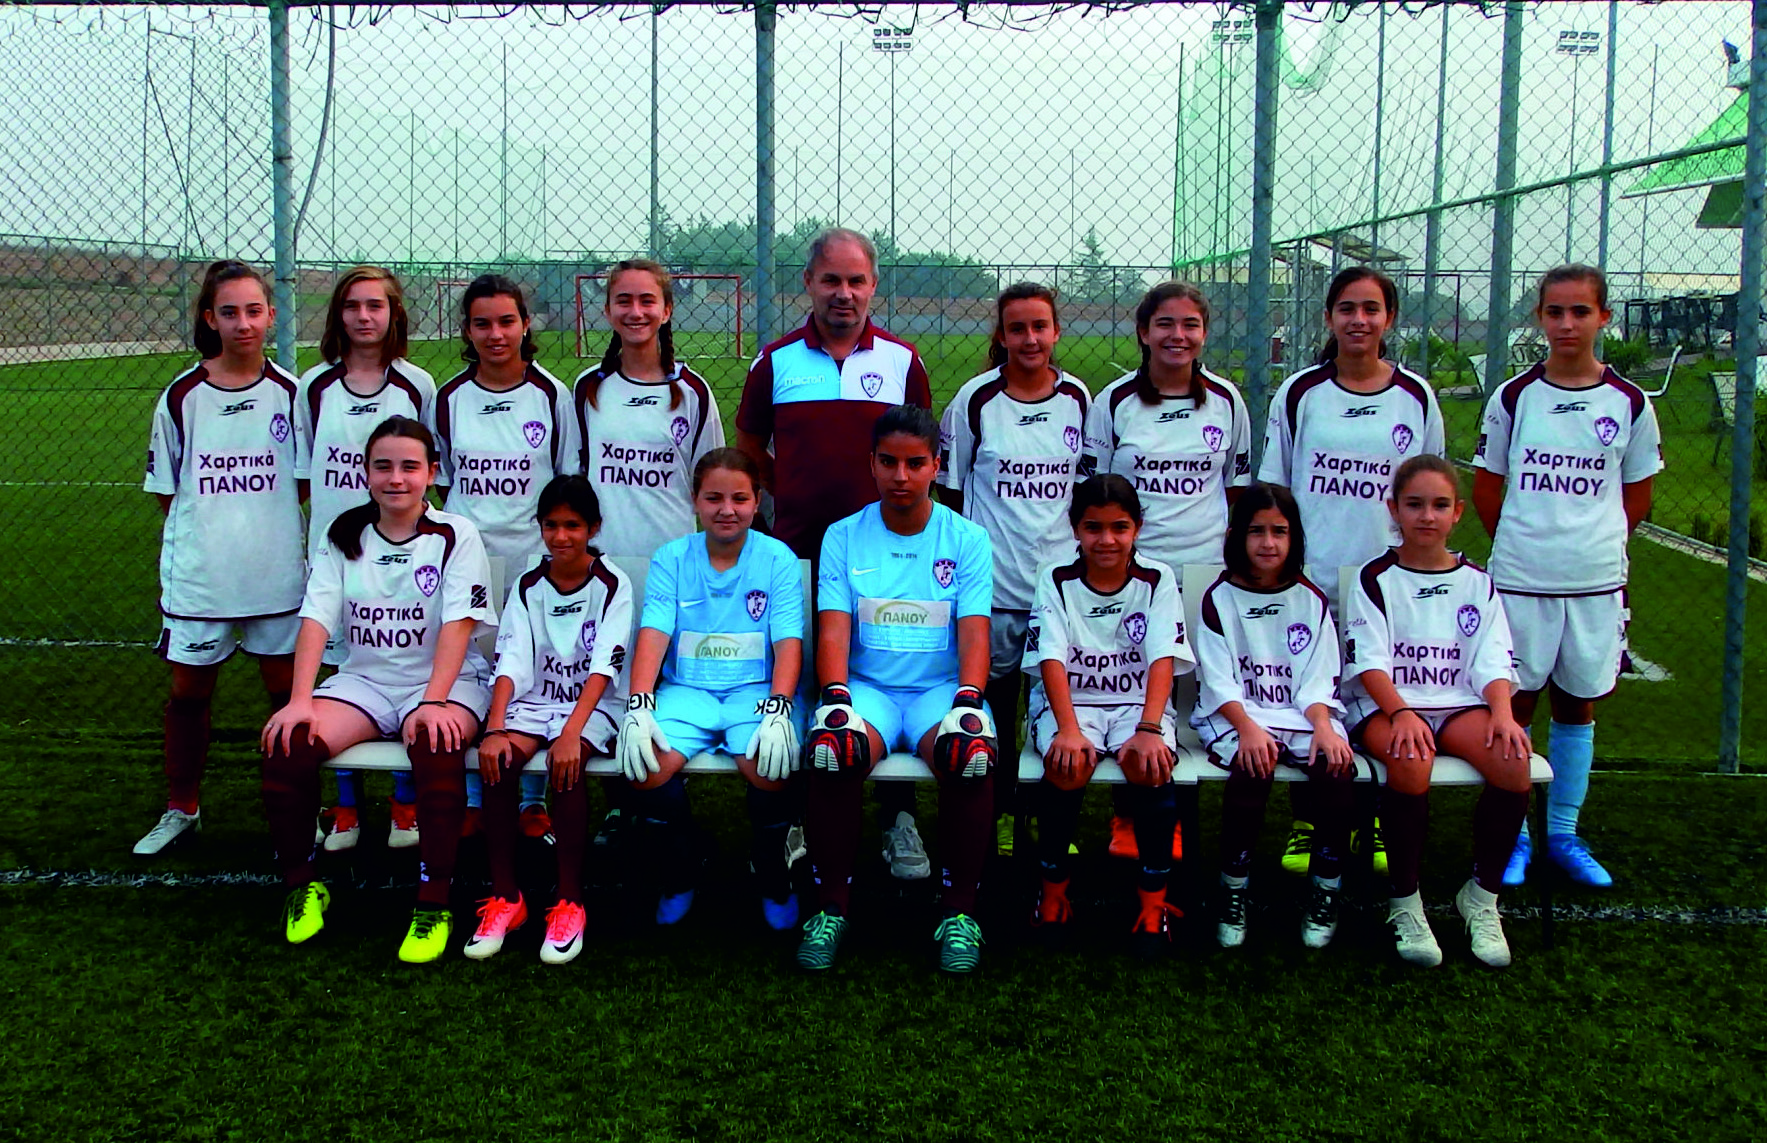 Ξεκινούν οι προπονήσεις στην Ακαδημία ποδοσφαίρου Γυναικών της ΑΕΛ